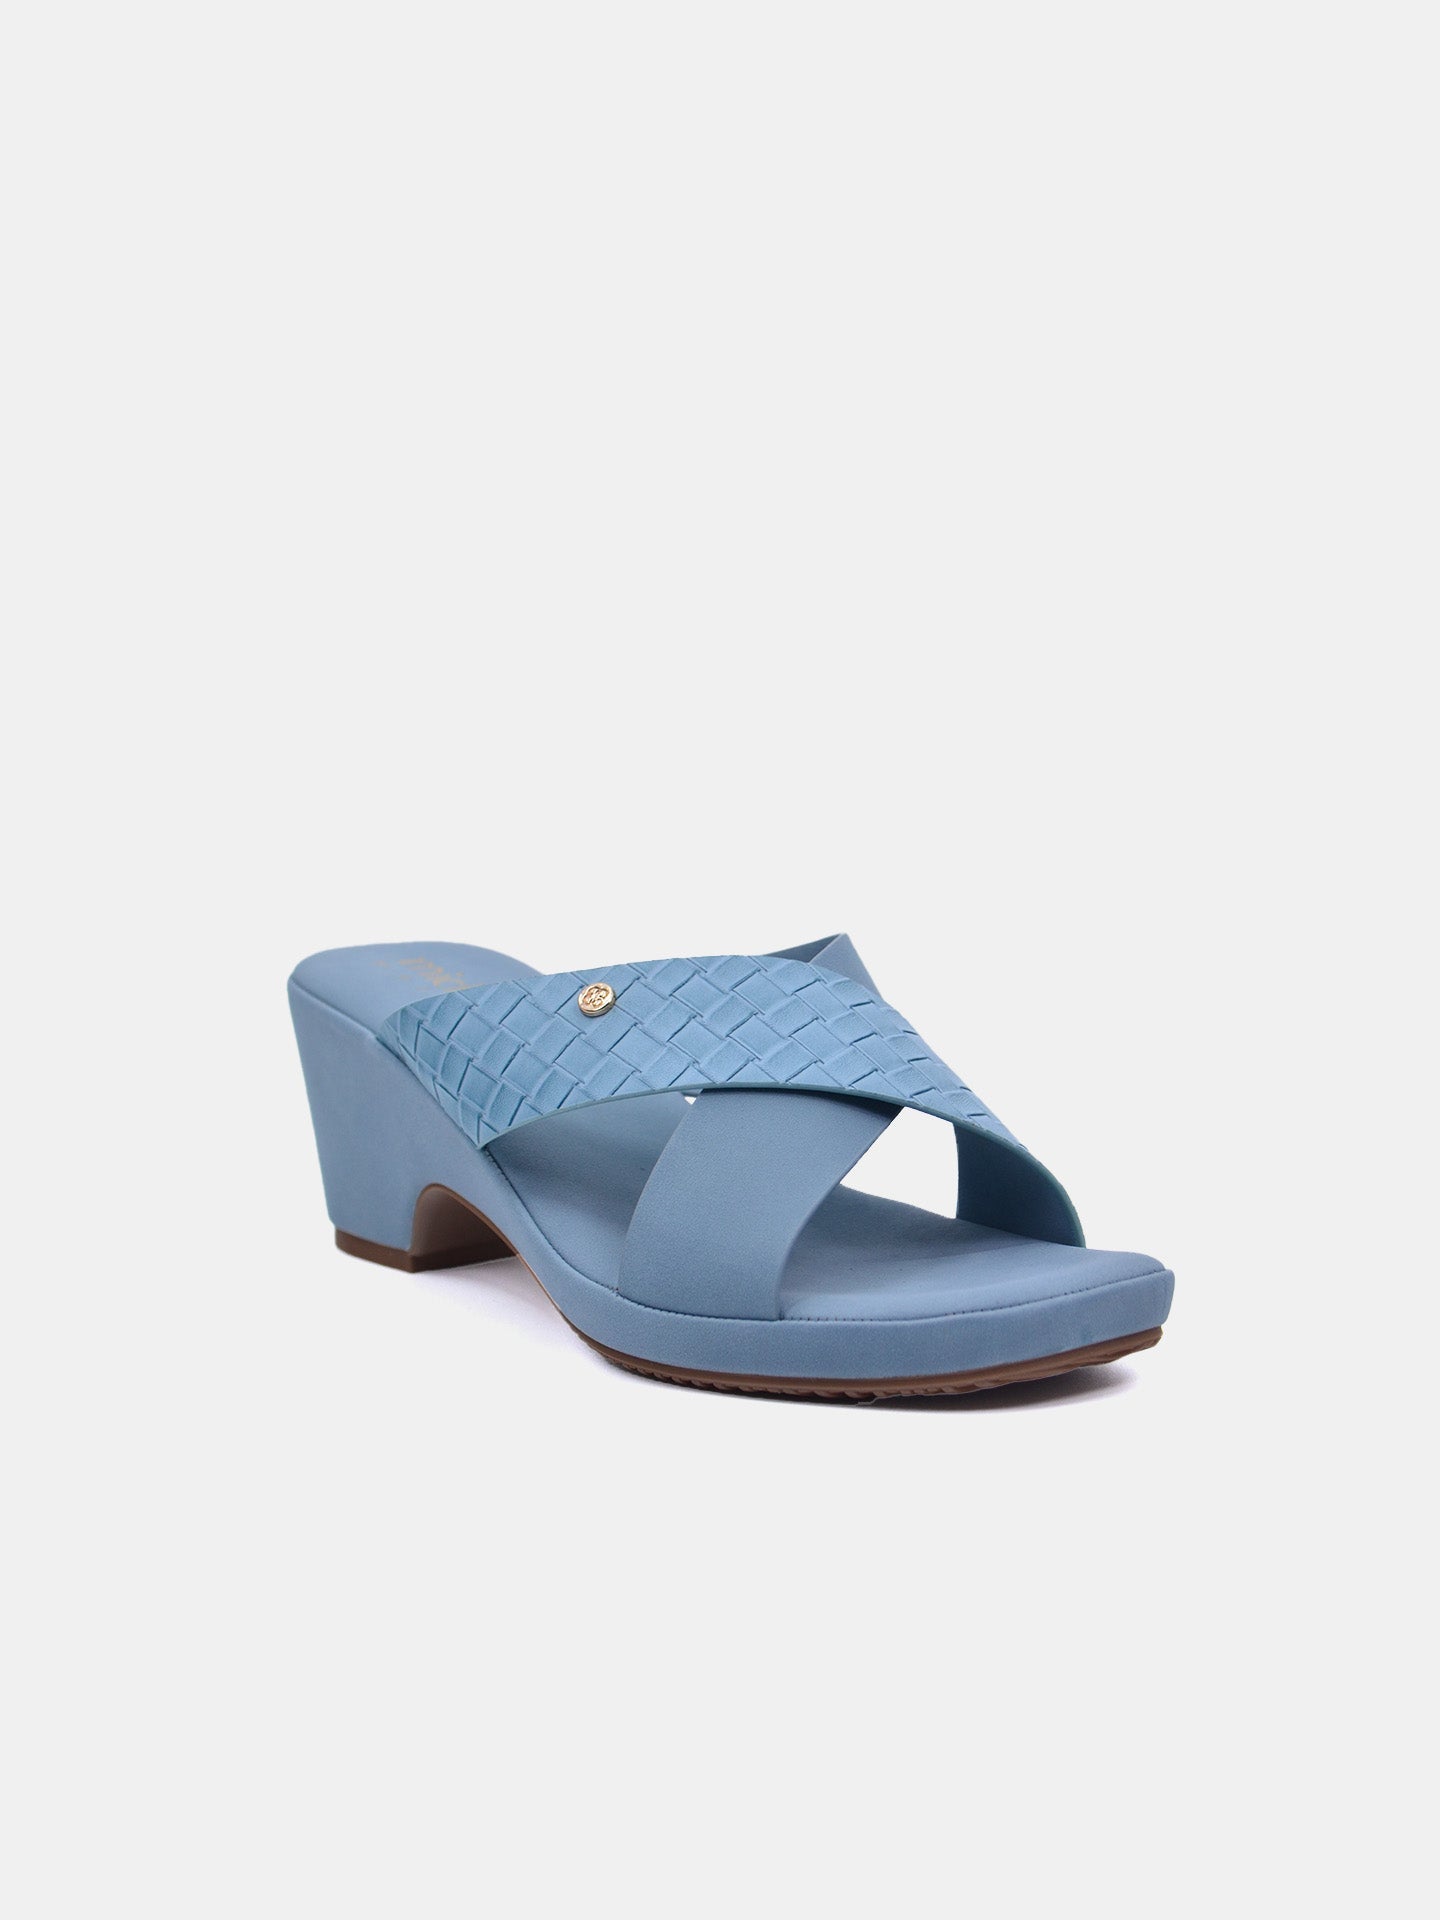 Michelle Morgan 114RJ211 Women's Heeled Sandals #color_Blue